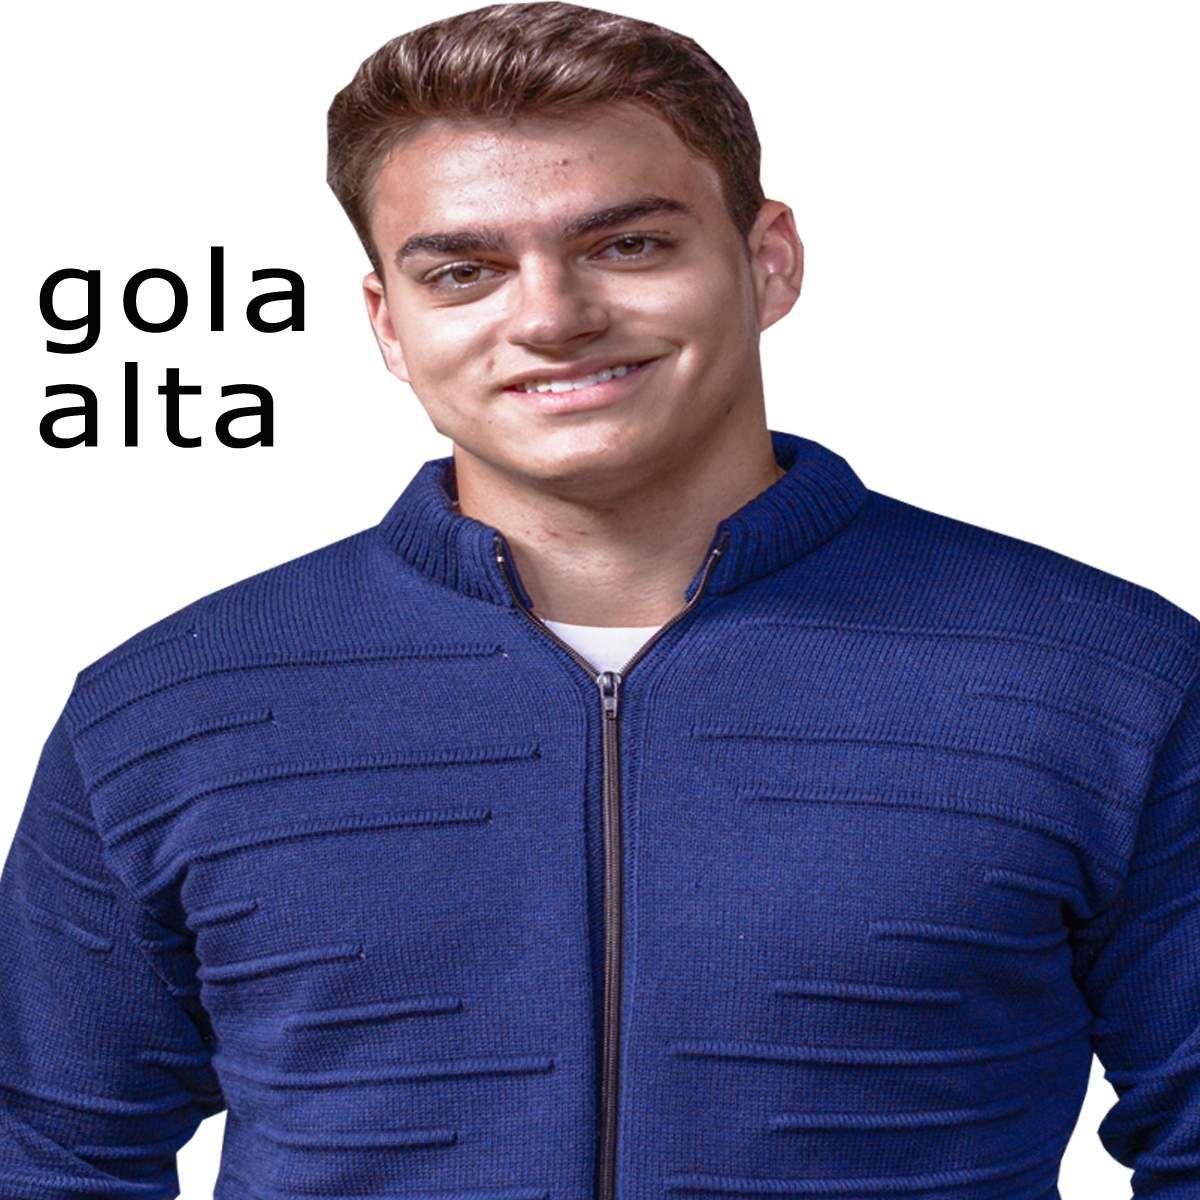 jaqueta de tricô masculina